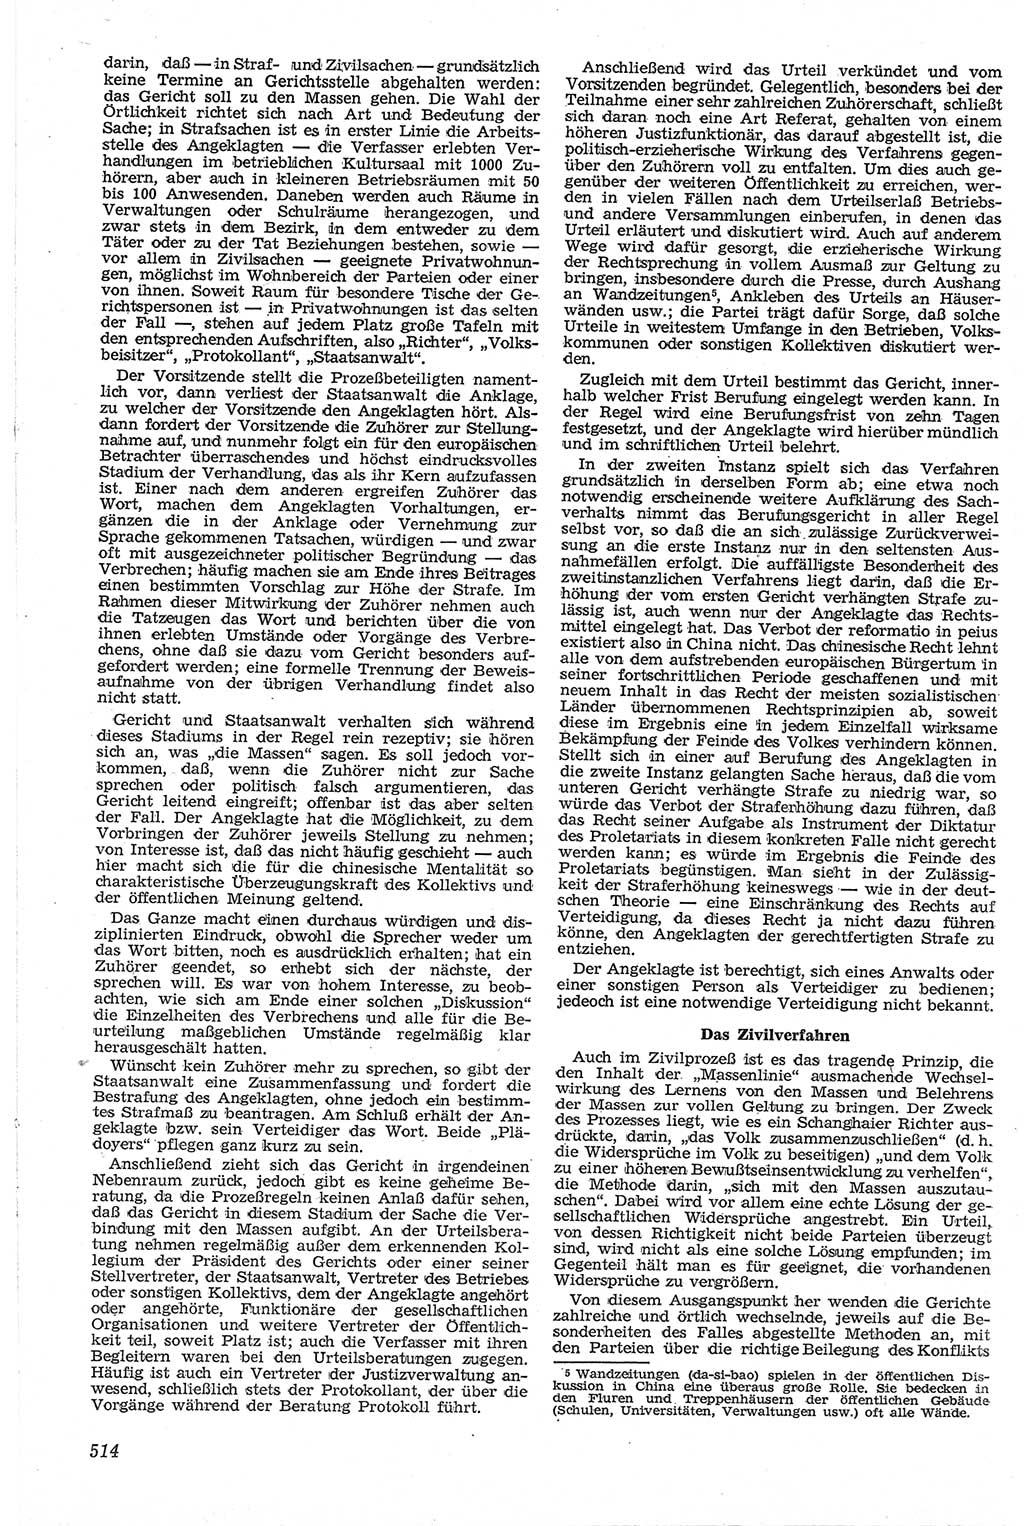 Neue Justiz (NJ), Zeitschrift für Recht und Rechtswissenschaft [Deutsche Demokratische Republik (DDR)], 13. Jahrgang 1959, Seite 514 (NJ DDR 1959, S. 514)